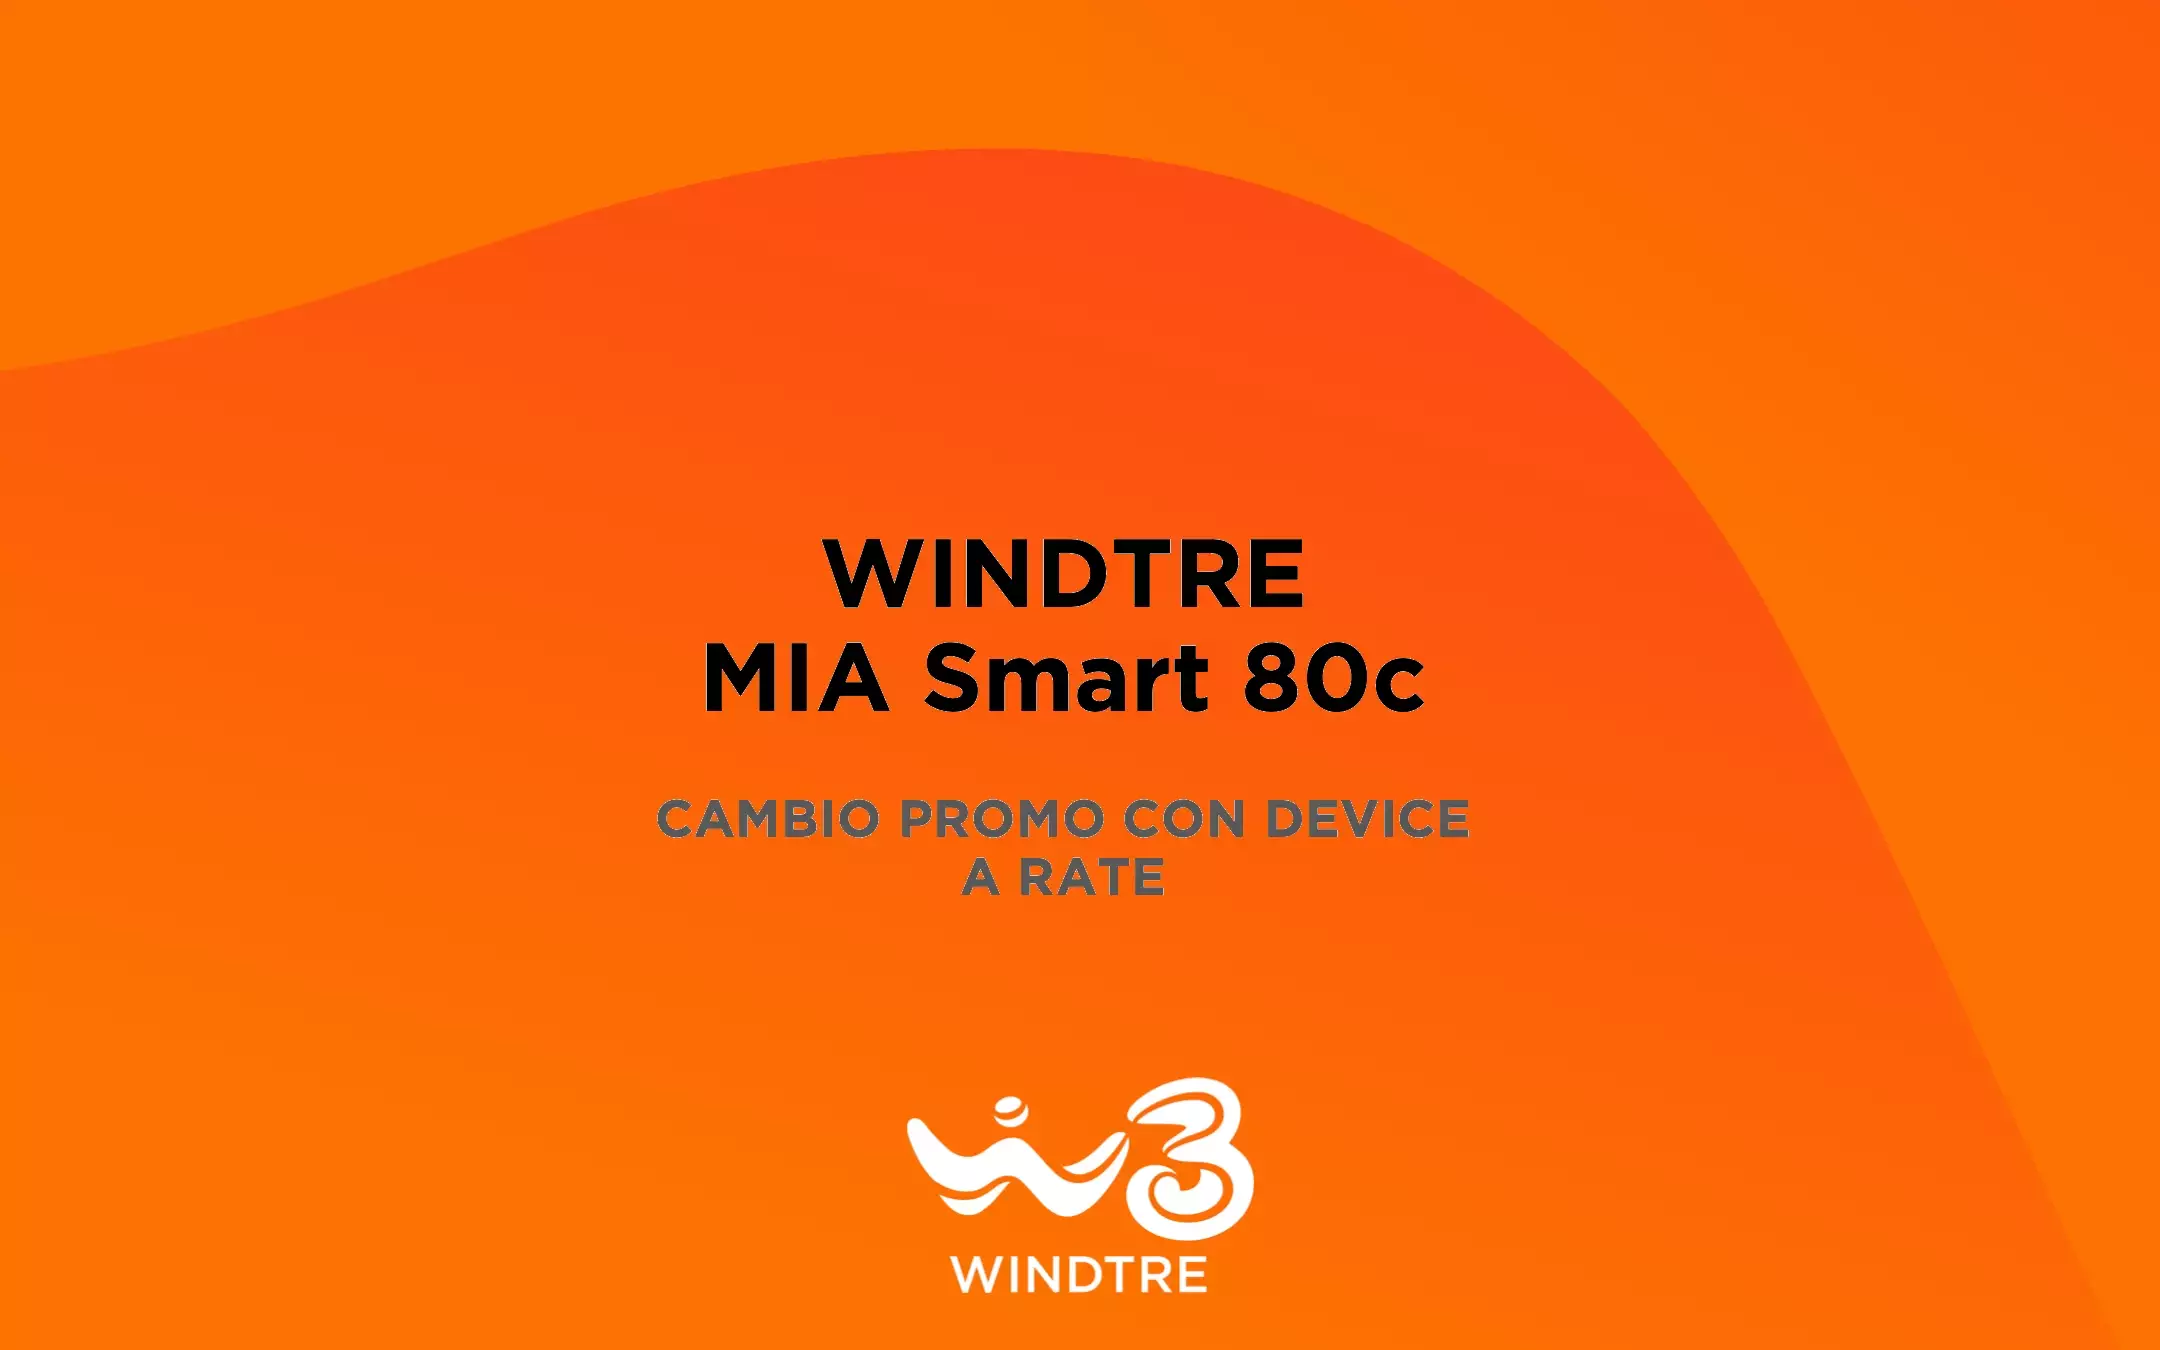 WINDTRE: MIA Smart 80c cambio promo con smartphone